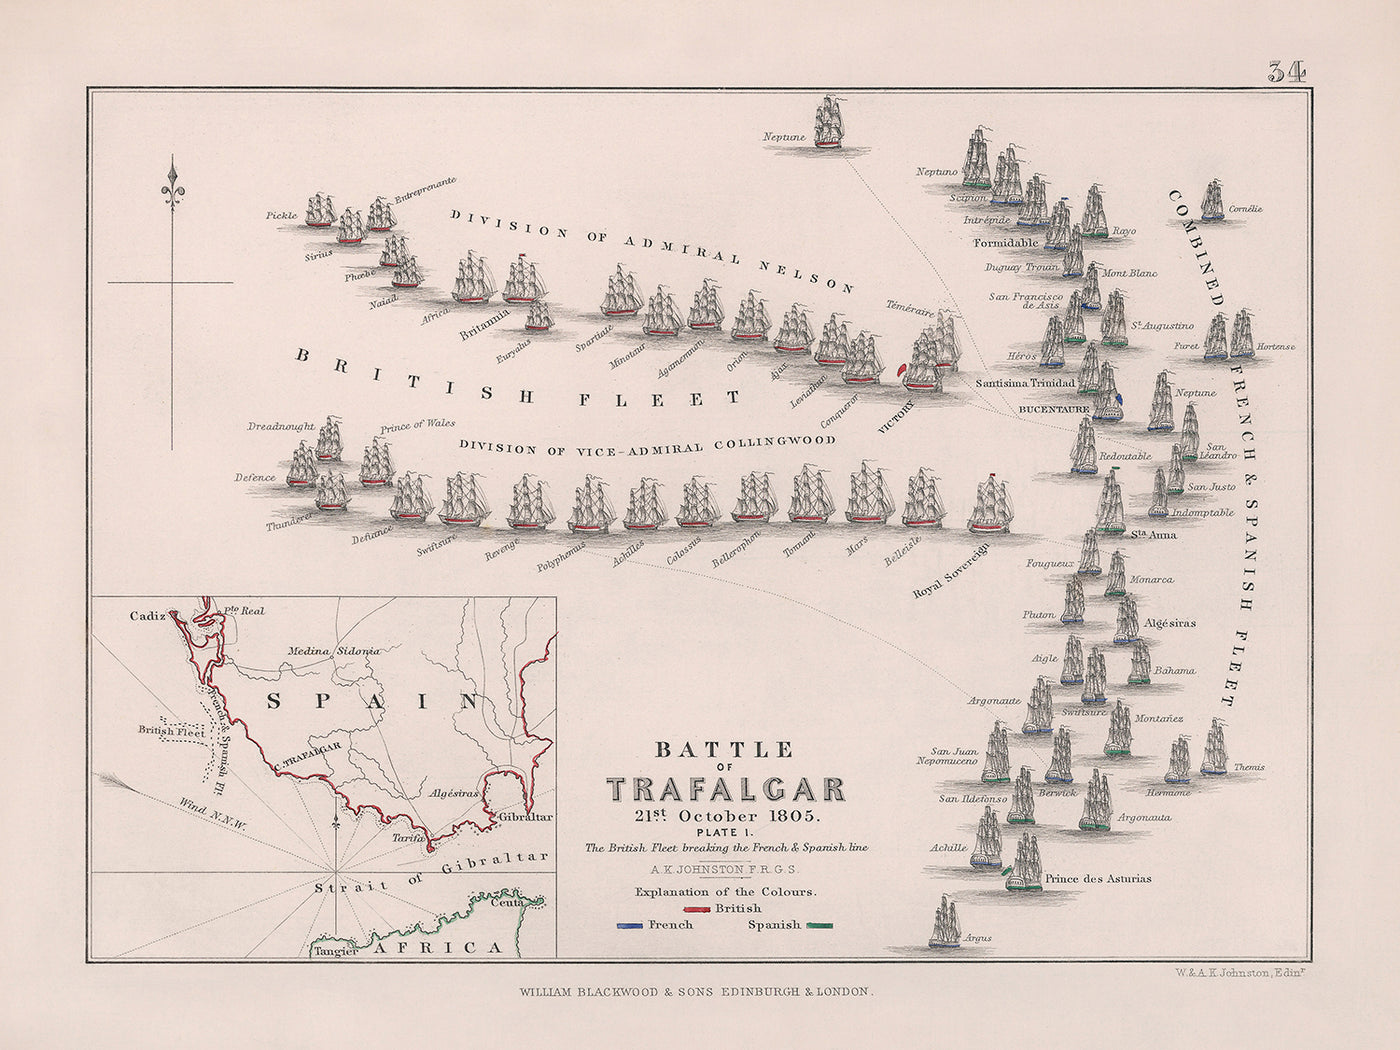 Batalla de Trafalgar: la flota británica rompiendo la línea francesa y española por AK Johnston, 1852